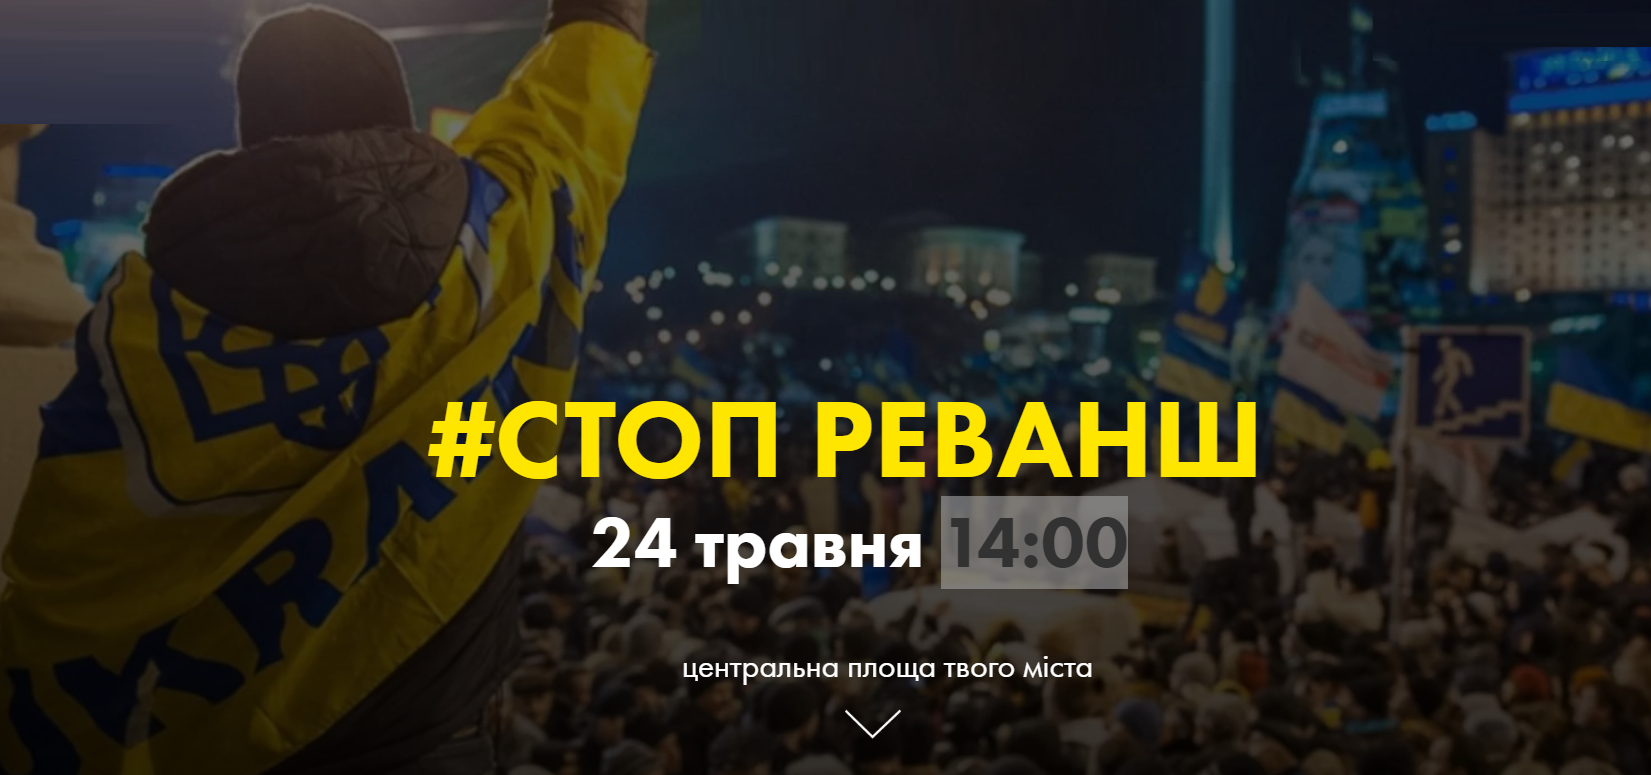 Движение "Стоп Реванш" начинает акцию протеста по всей Украине: онланй трансляция